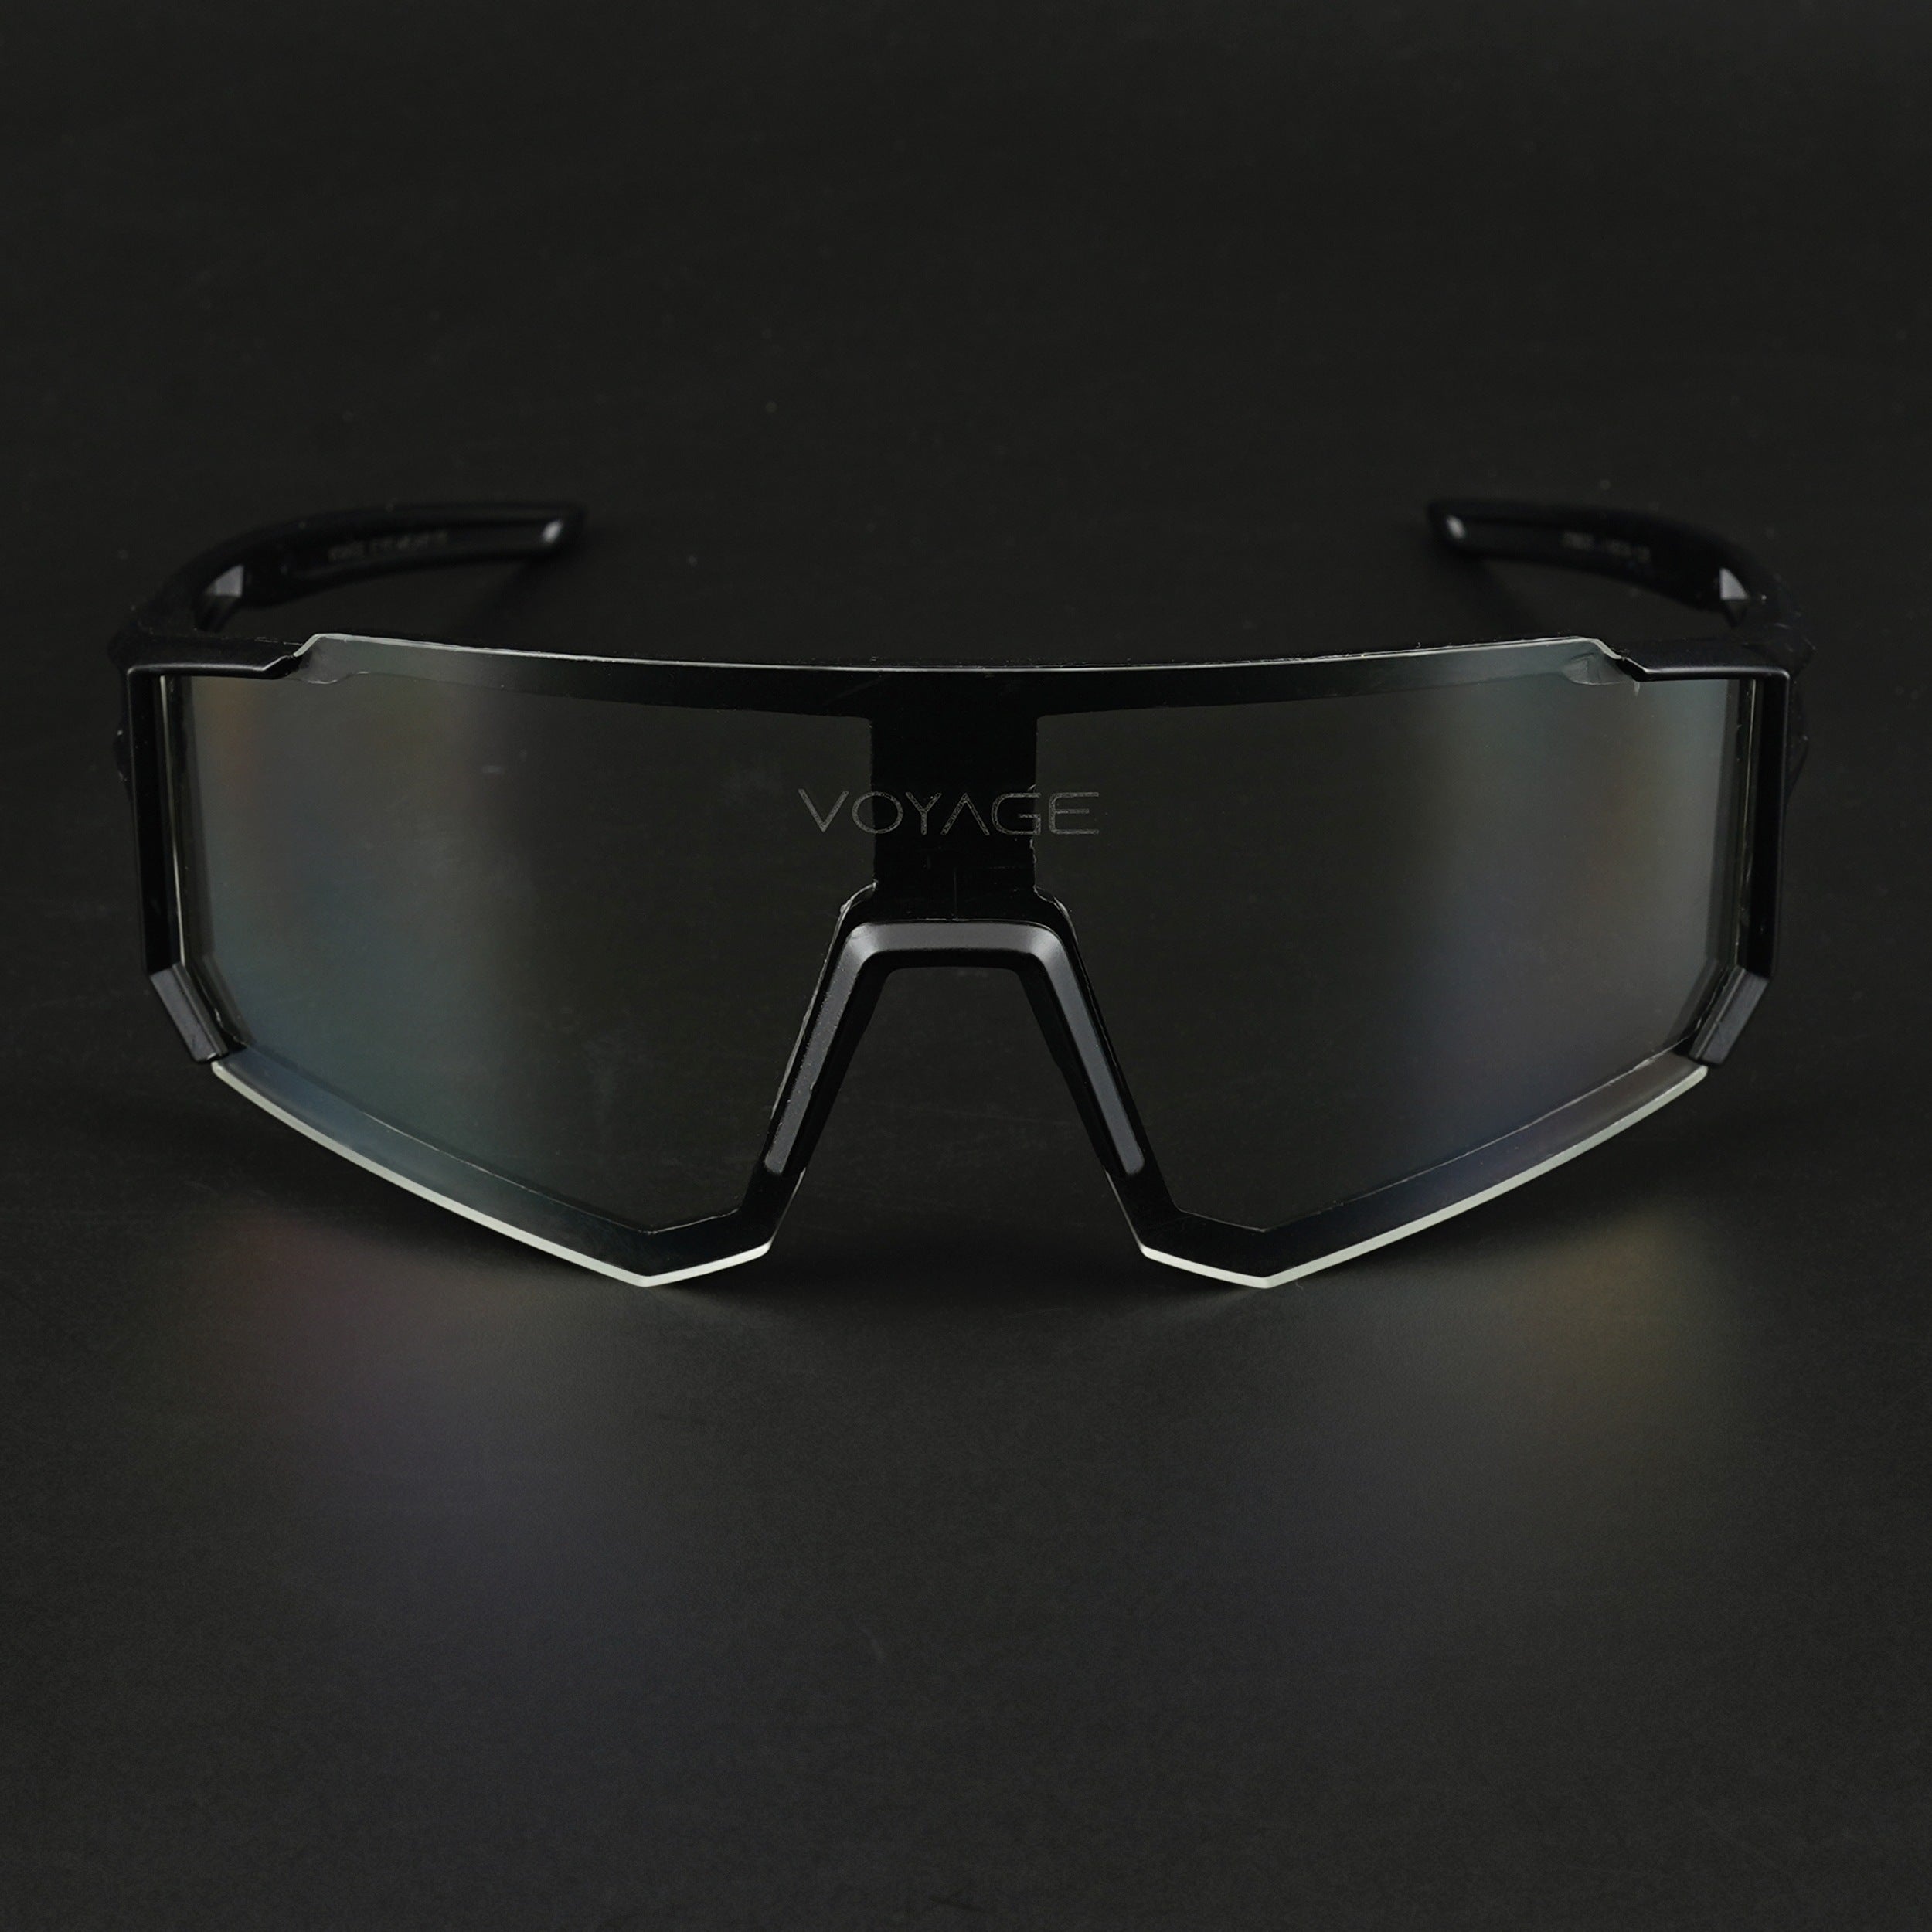 Voyage Drift Sunglasses for Men & Women (Clear Lens | Black Frame - MG5622)